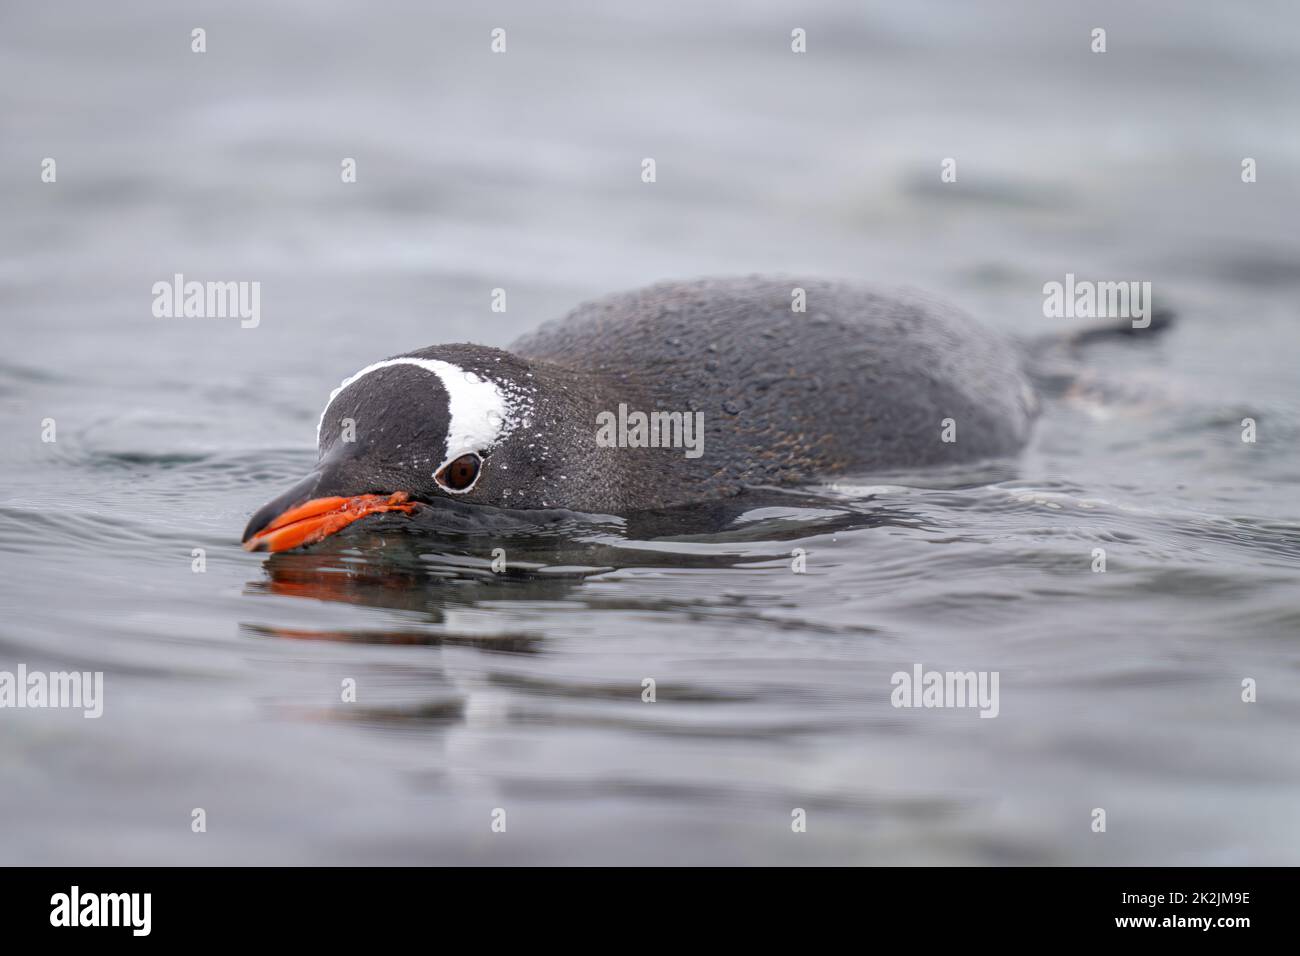 Pinguino Gentoo porpoising in macchina fotografica per la vista dell'acqua Foto Stock